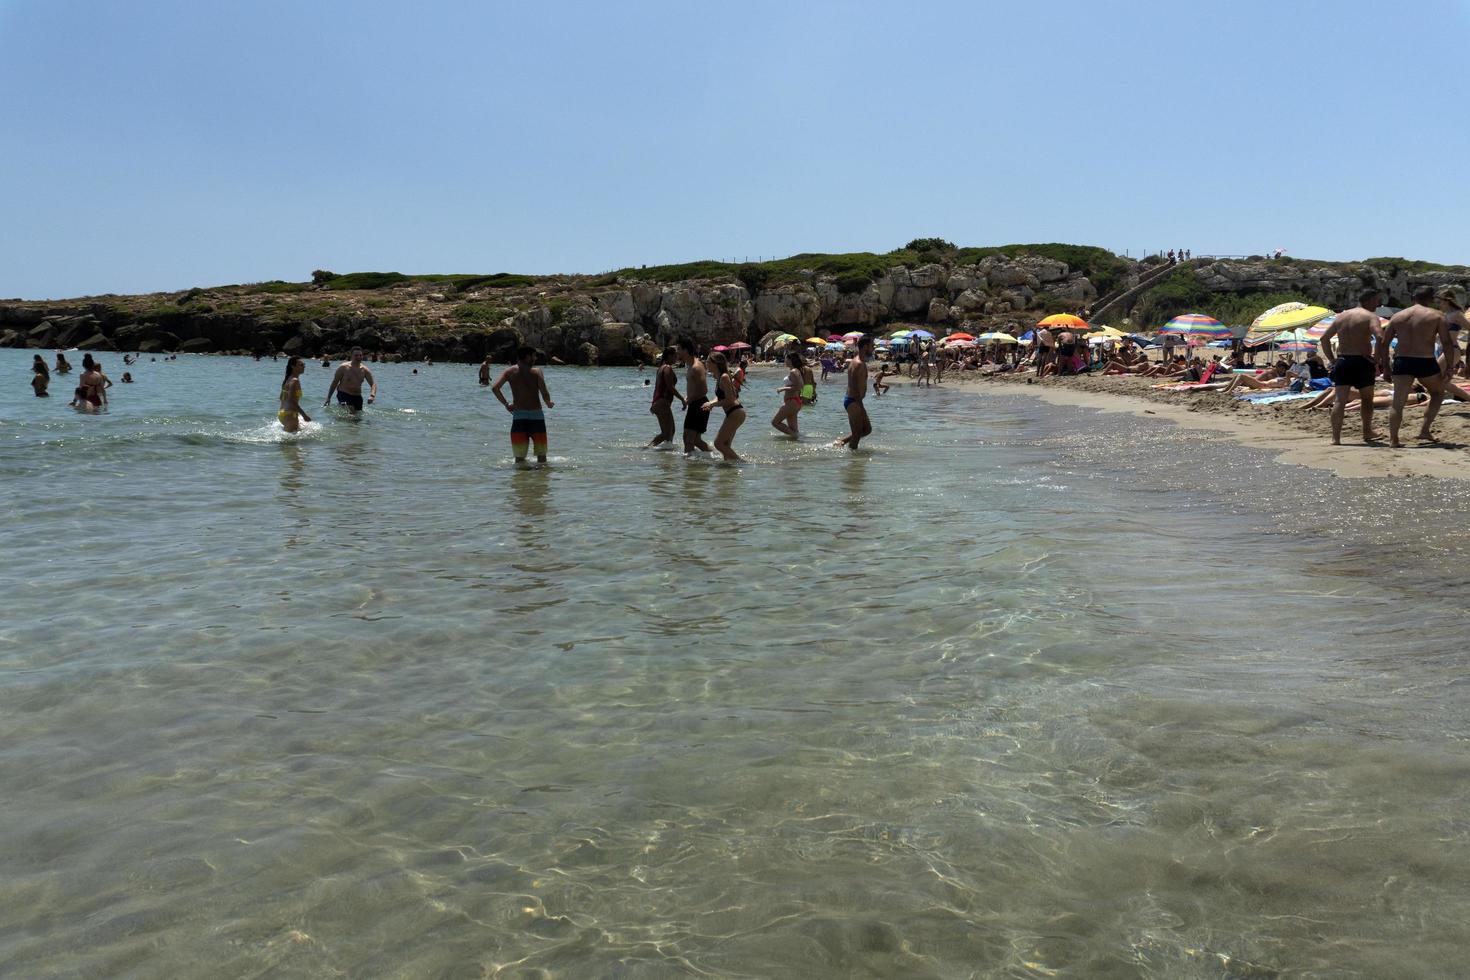 noto, italie - 18 juillet 2020 - plage de calamosche pleine de gens sans distanciation sociale après la quarantaine du coronavirus photo